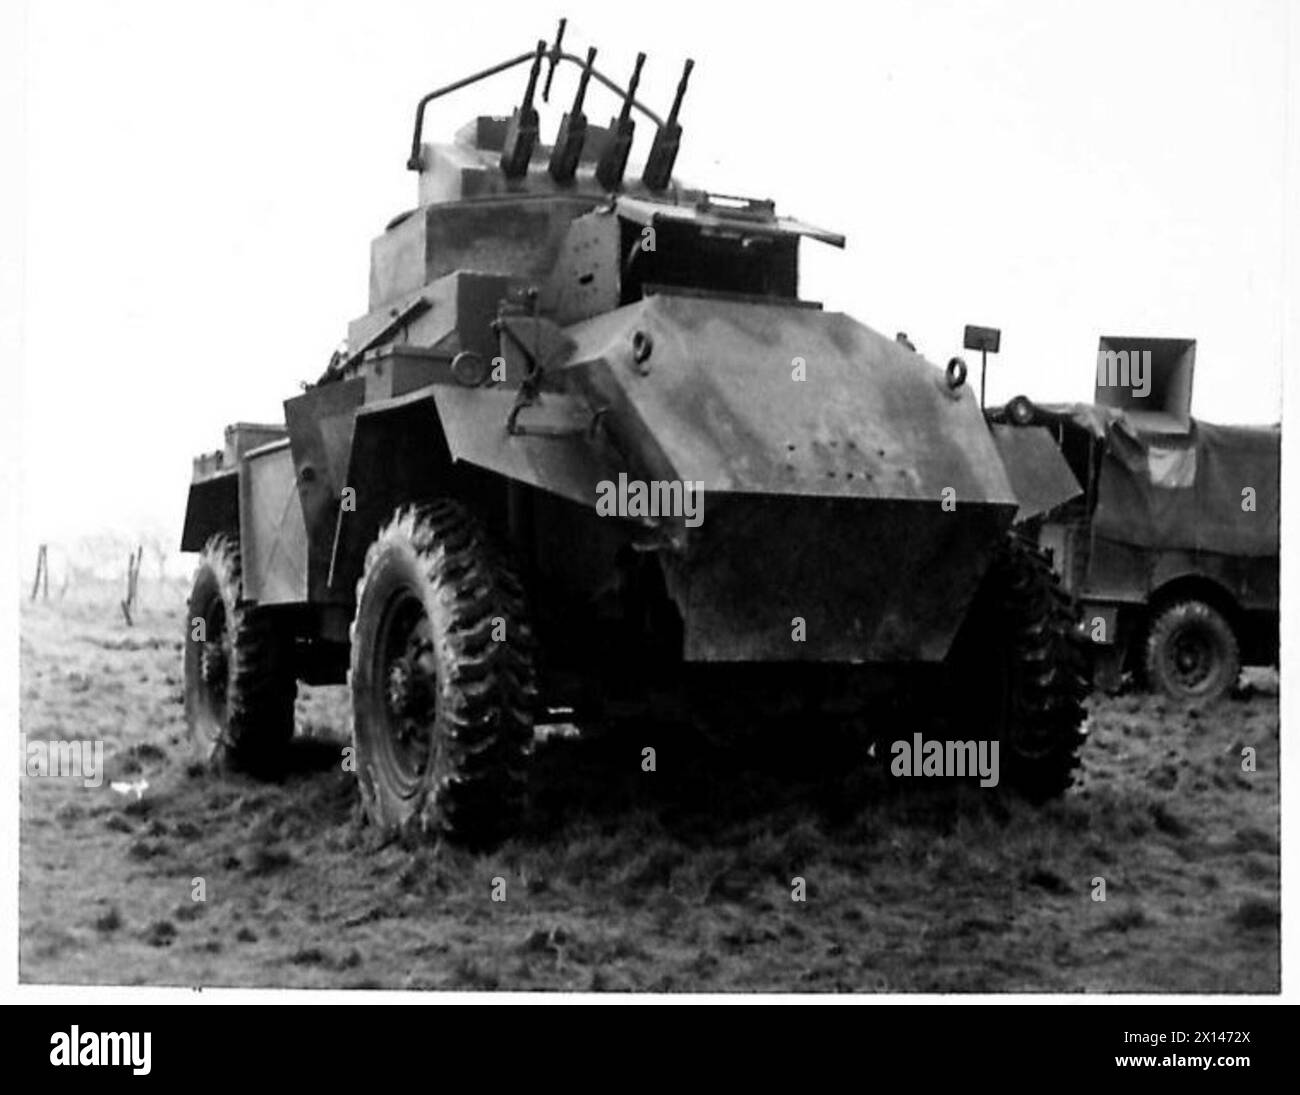 DÉMONSTRATION DE CHARS, LULWORTH - Humber Quad Besa A/A voiture blindée, armée britannique Banque D'Images